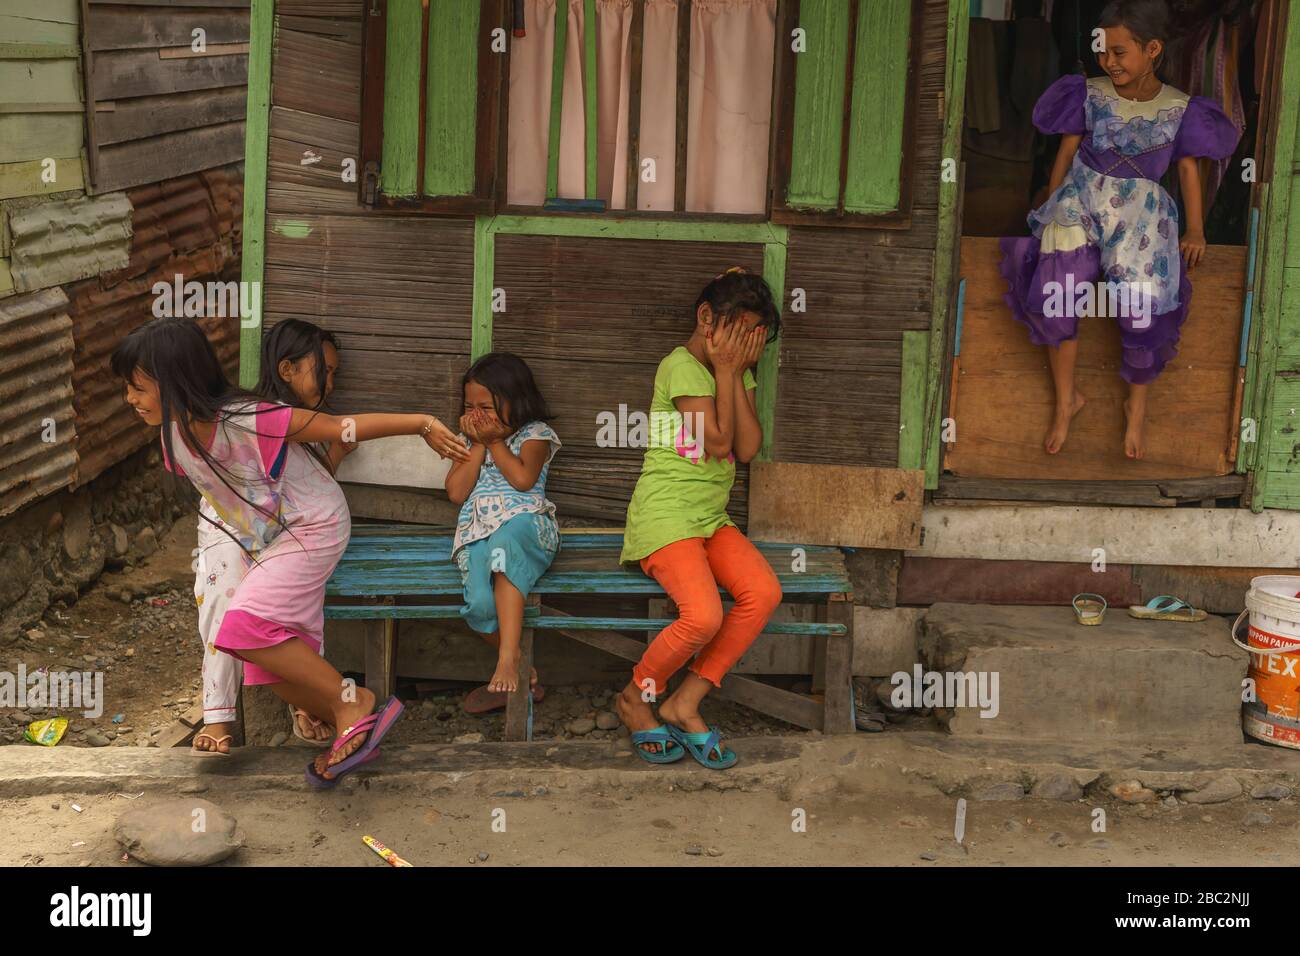 21 giugno 2018 Panyambungan, Sumatra, Indonesia: Ragazze locali timide ed eccitate di una macchina fotografica che si allontana coprendo i volti e ridendo Foto Stock